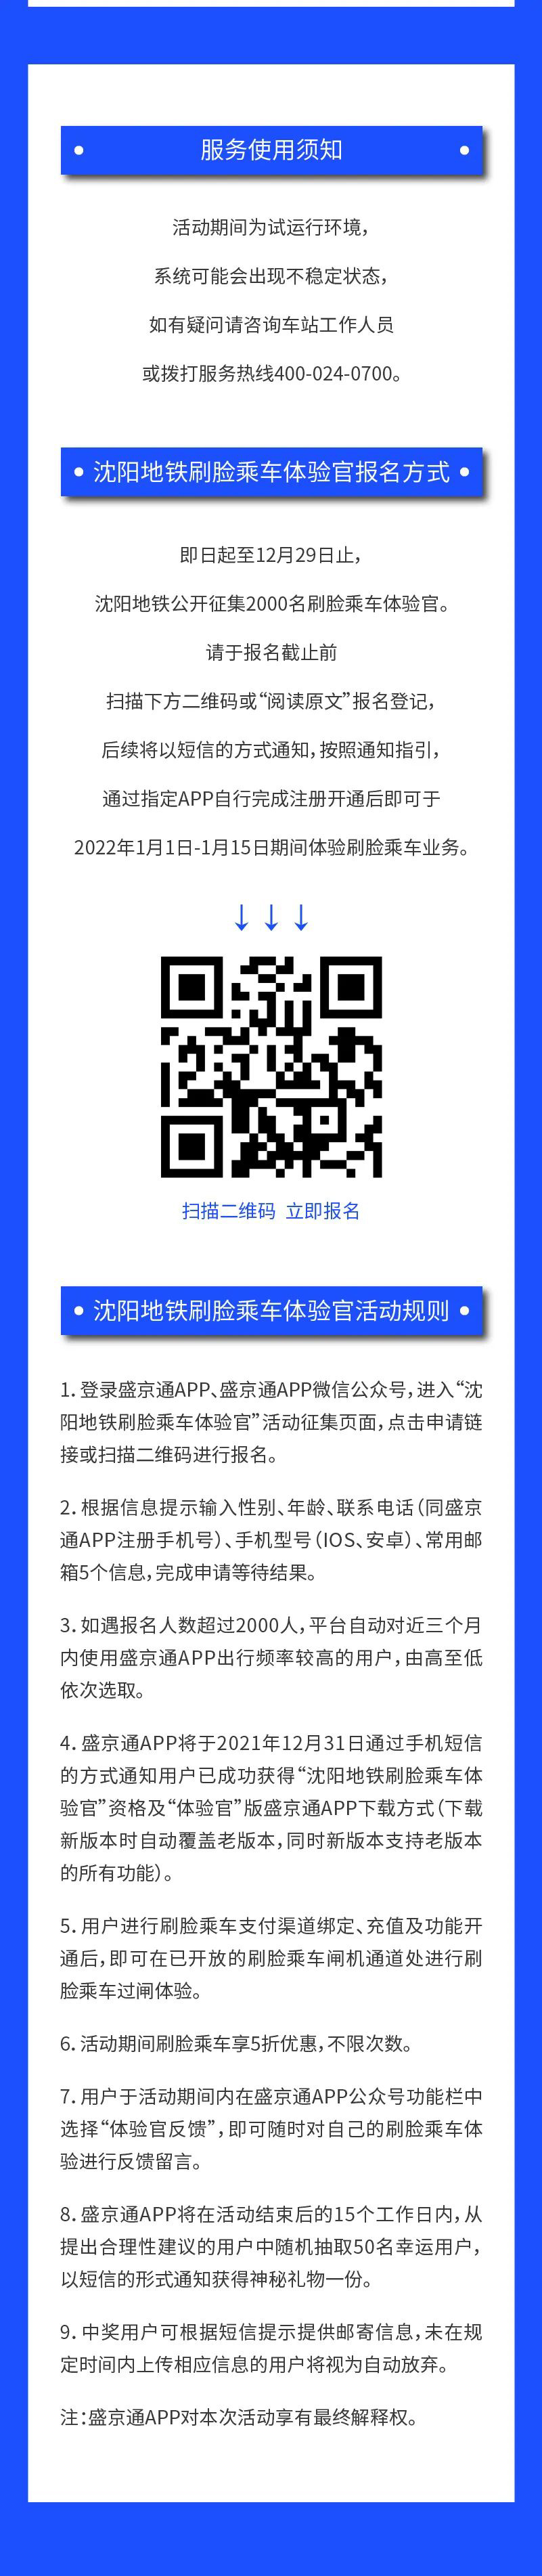 沈阳地铁刷脸乘车将在 2022 年 1 月 1 日起试运行：无需手机或票卡即可过闸